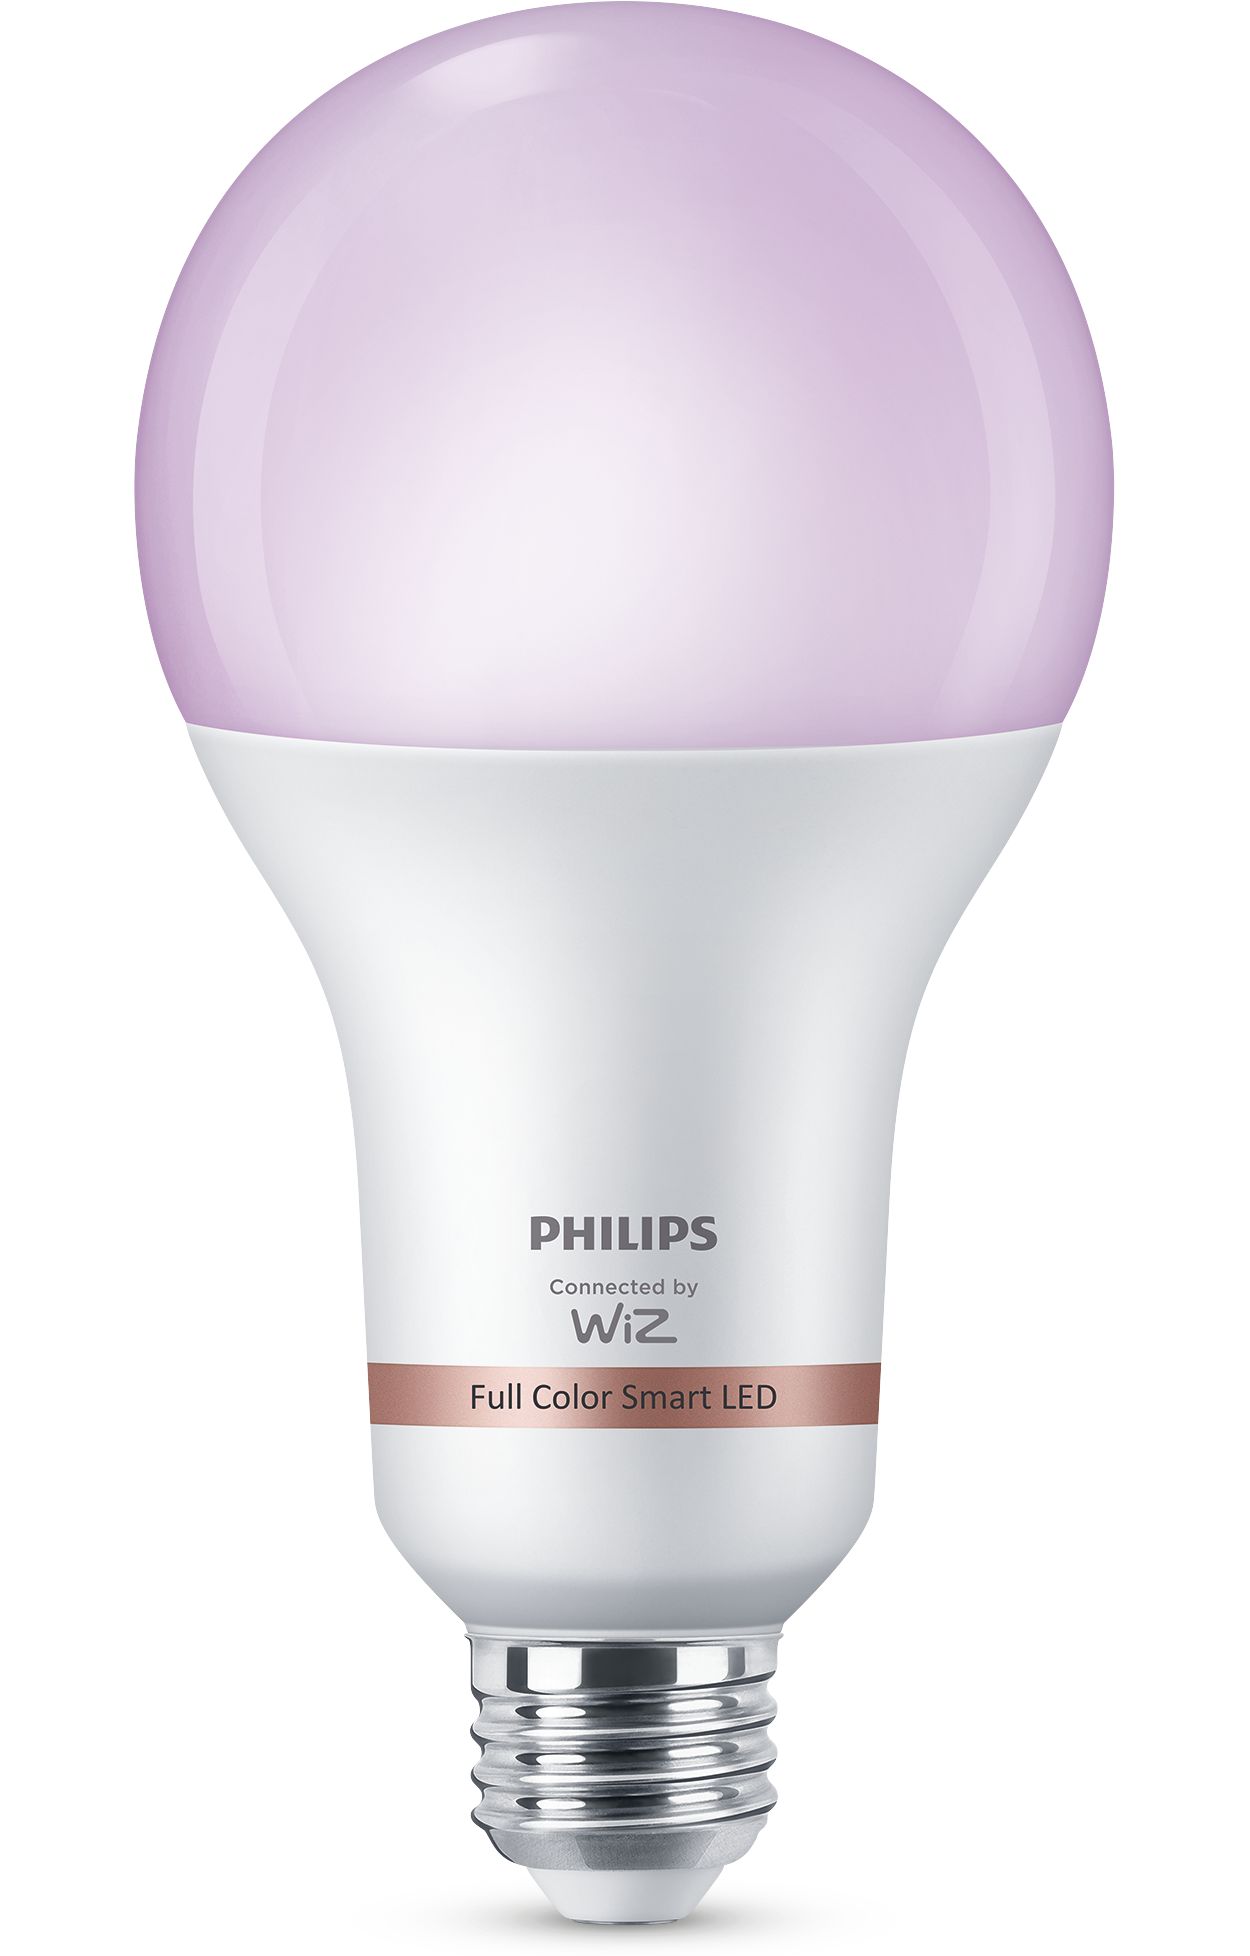 Nuove lampade smart e nuovi effetti luminosi per Philips Hue